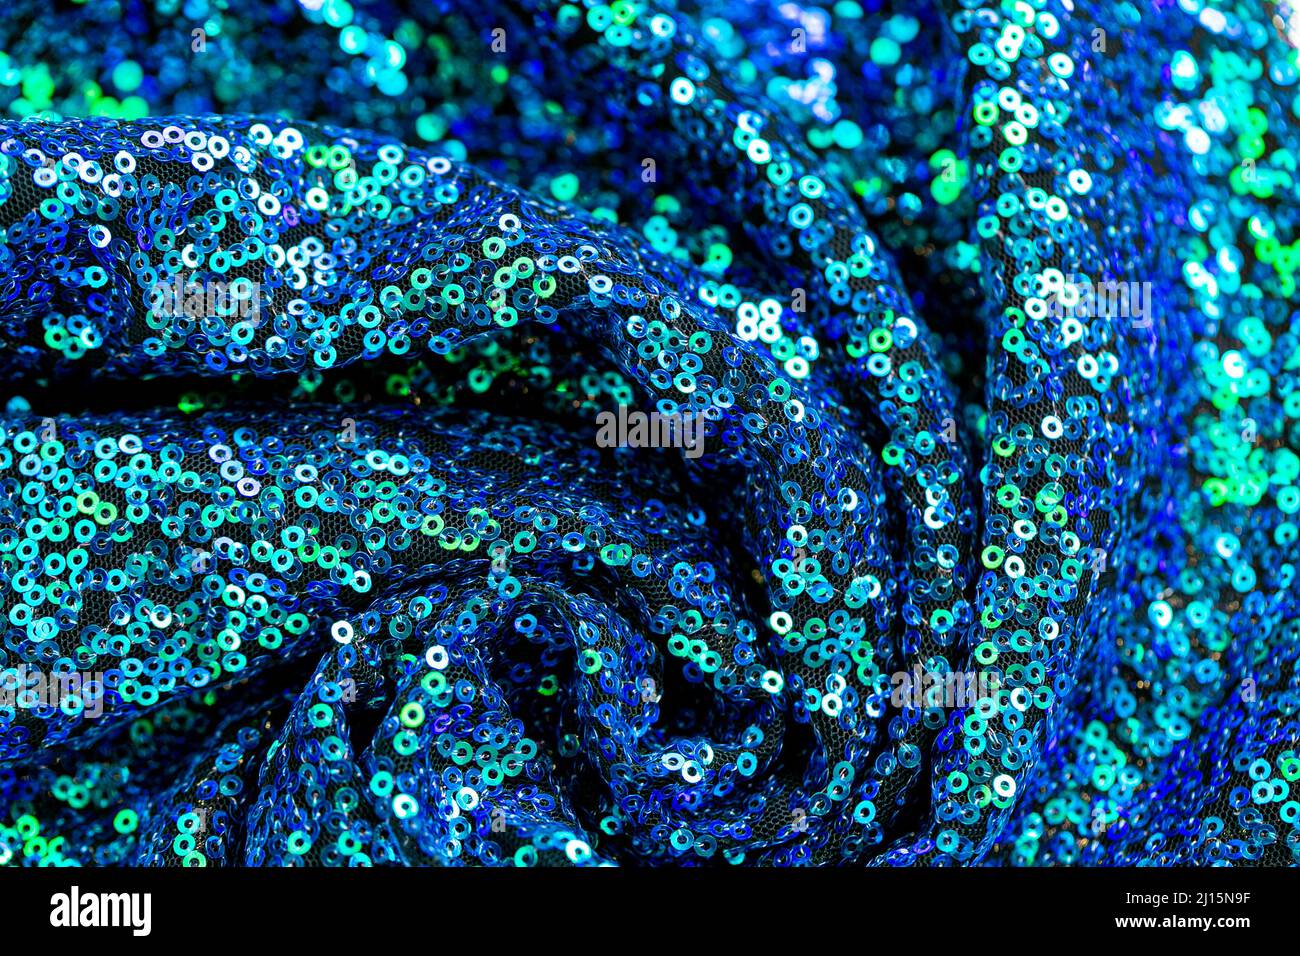 Lentejuelas texture.Green blue lentejuelas background.Traje de color azul brillante y verde. Tejido y bordado Foto de stock